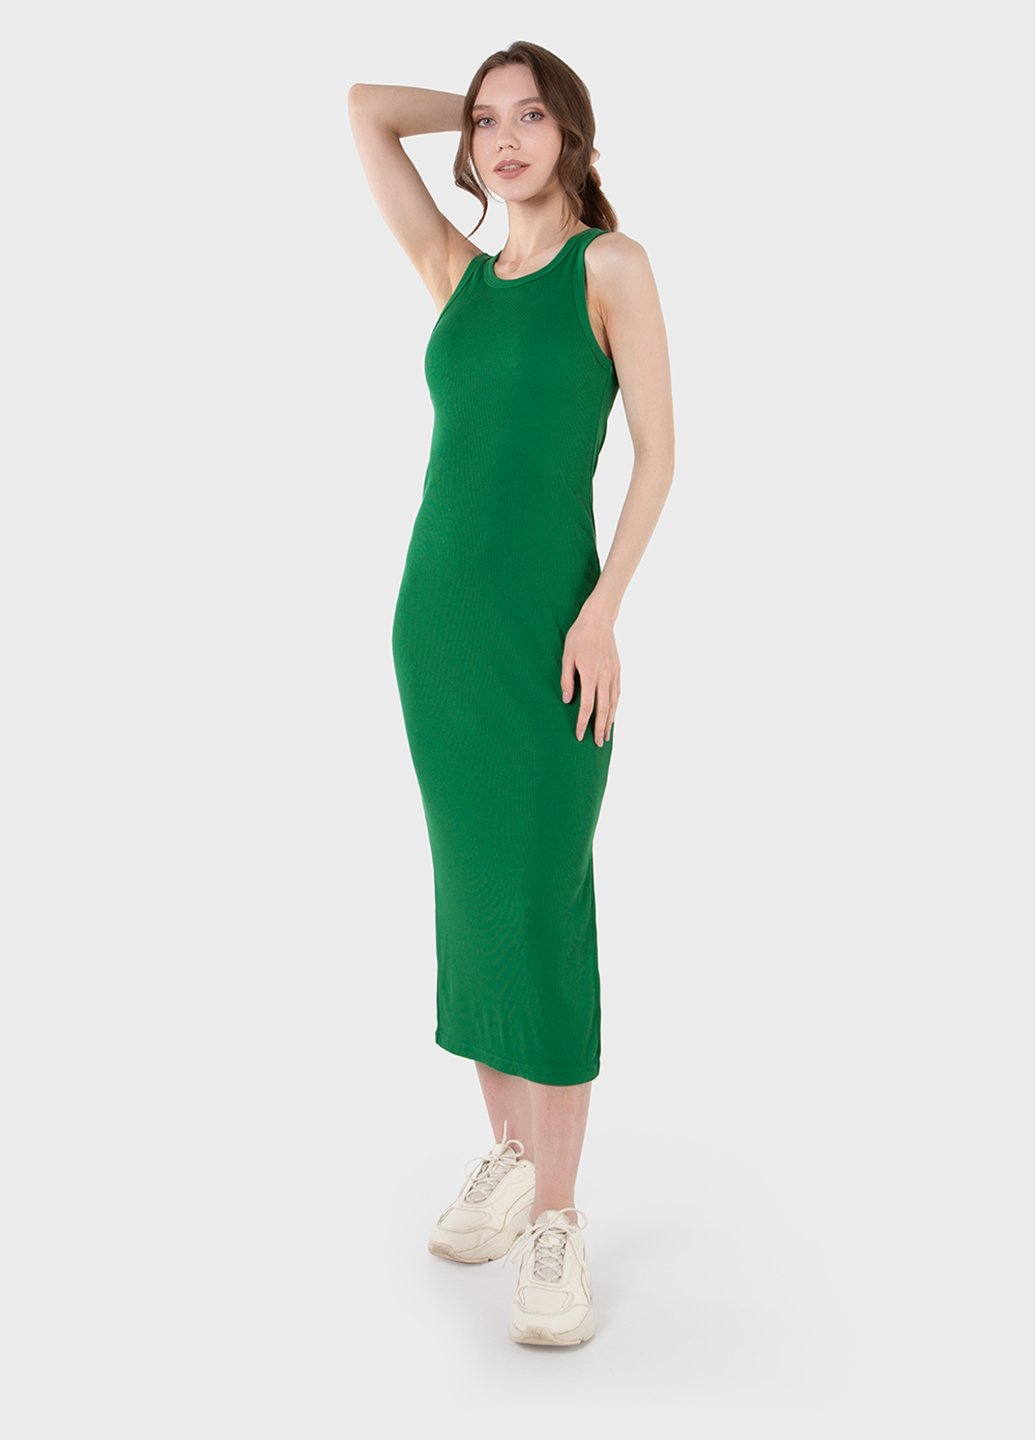 Купить Длинное платье-майка в рубчик зеленое Merlini Лонга 700000109 размер 42-44 (S-M) в интернет-магазине